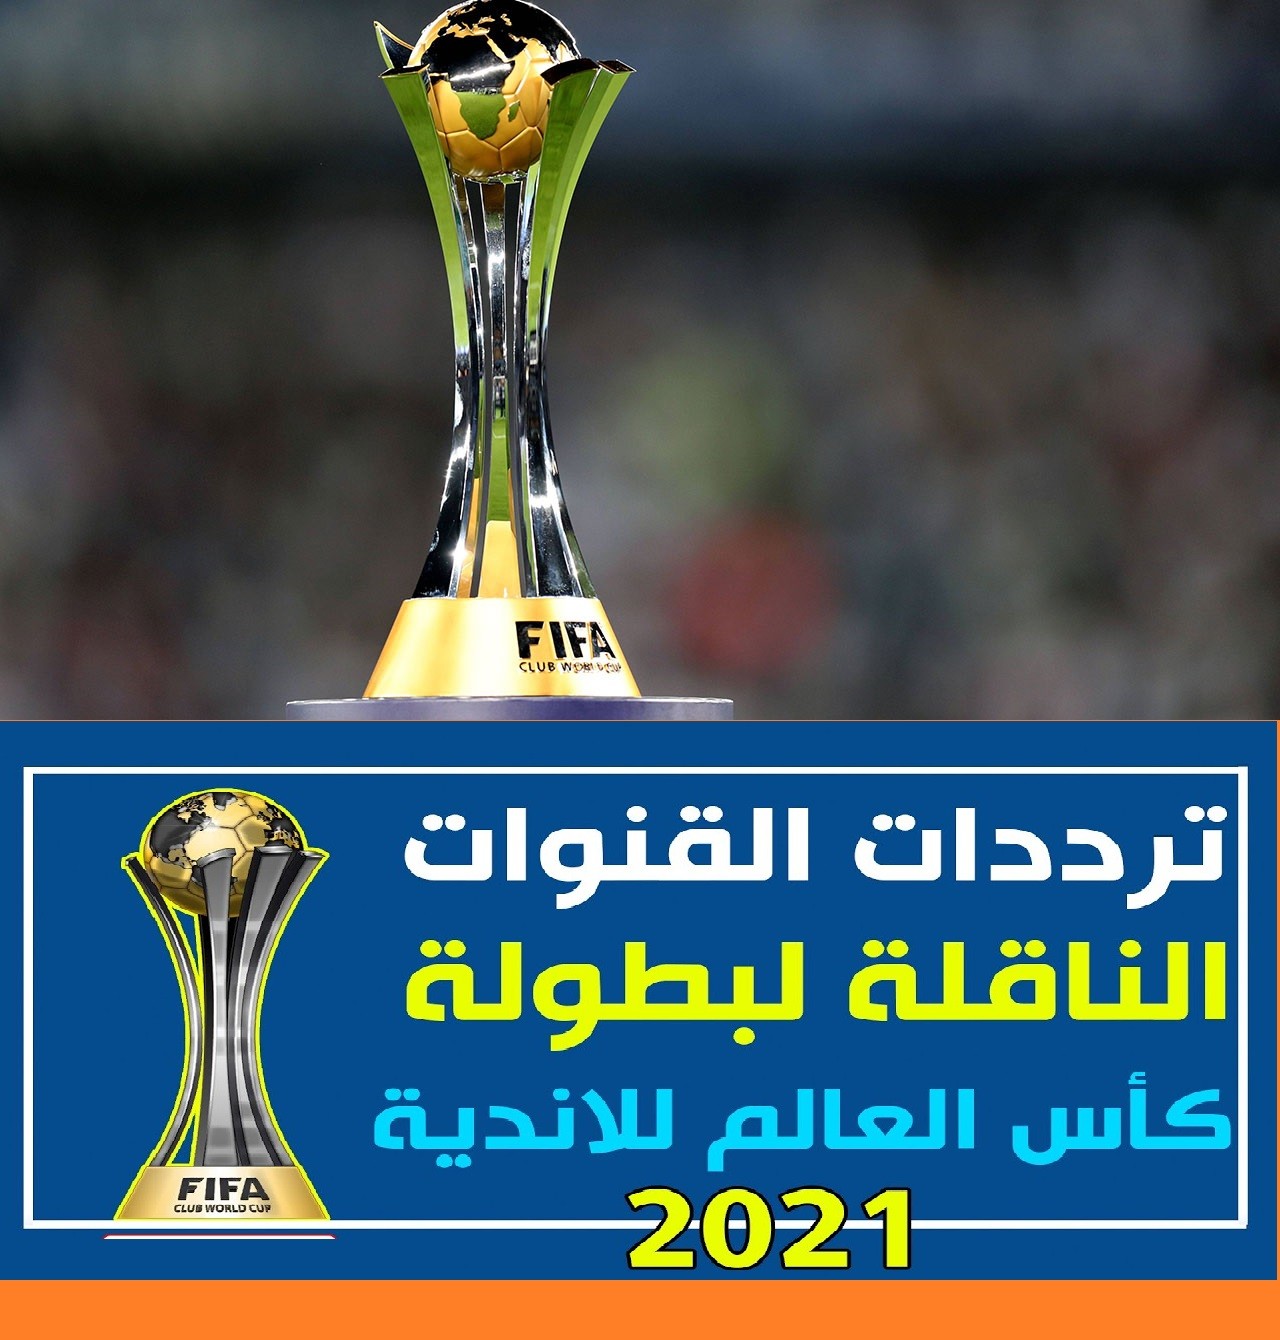 مواعيد مباريات كأس العالم للأندية 2021 وتردد القنوات الناقلة